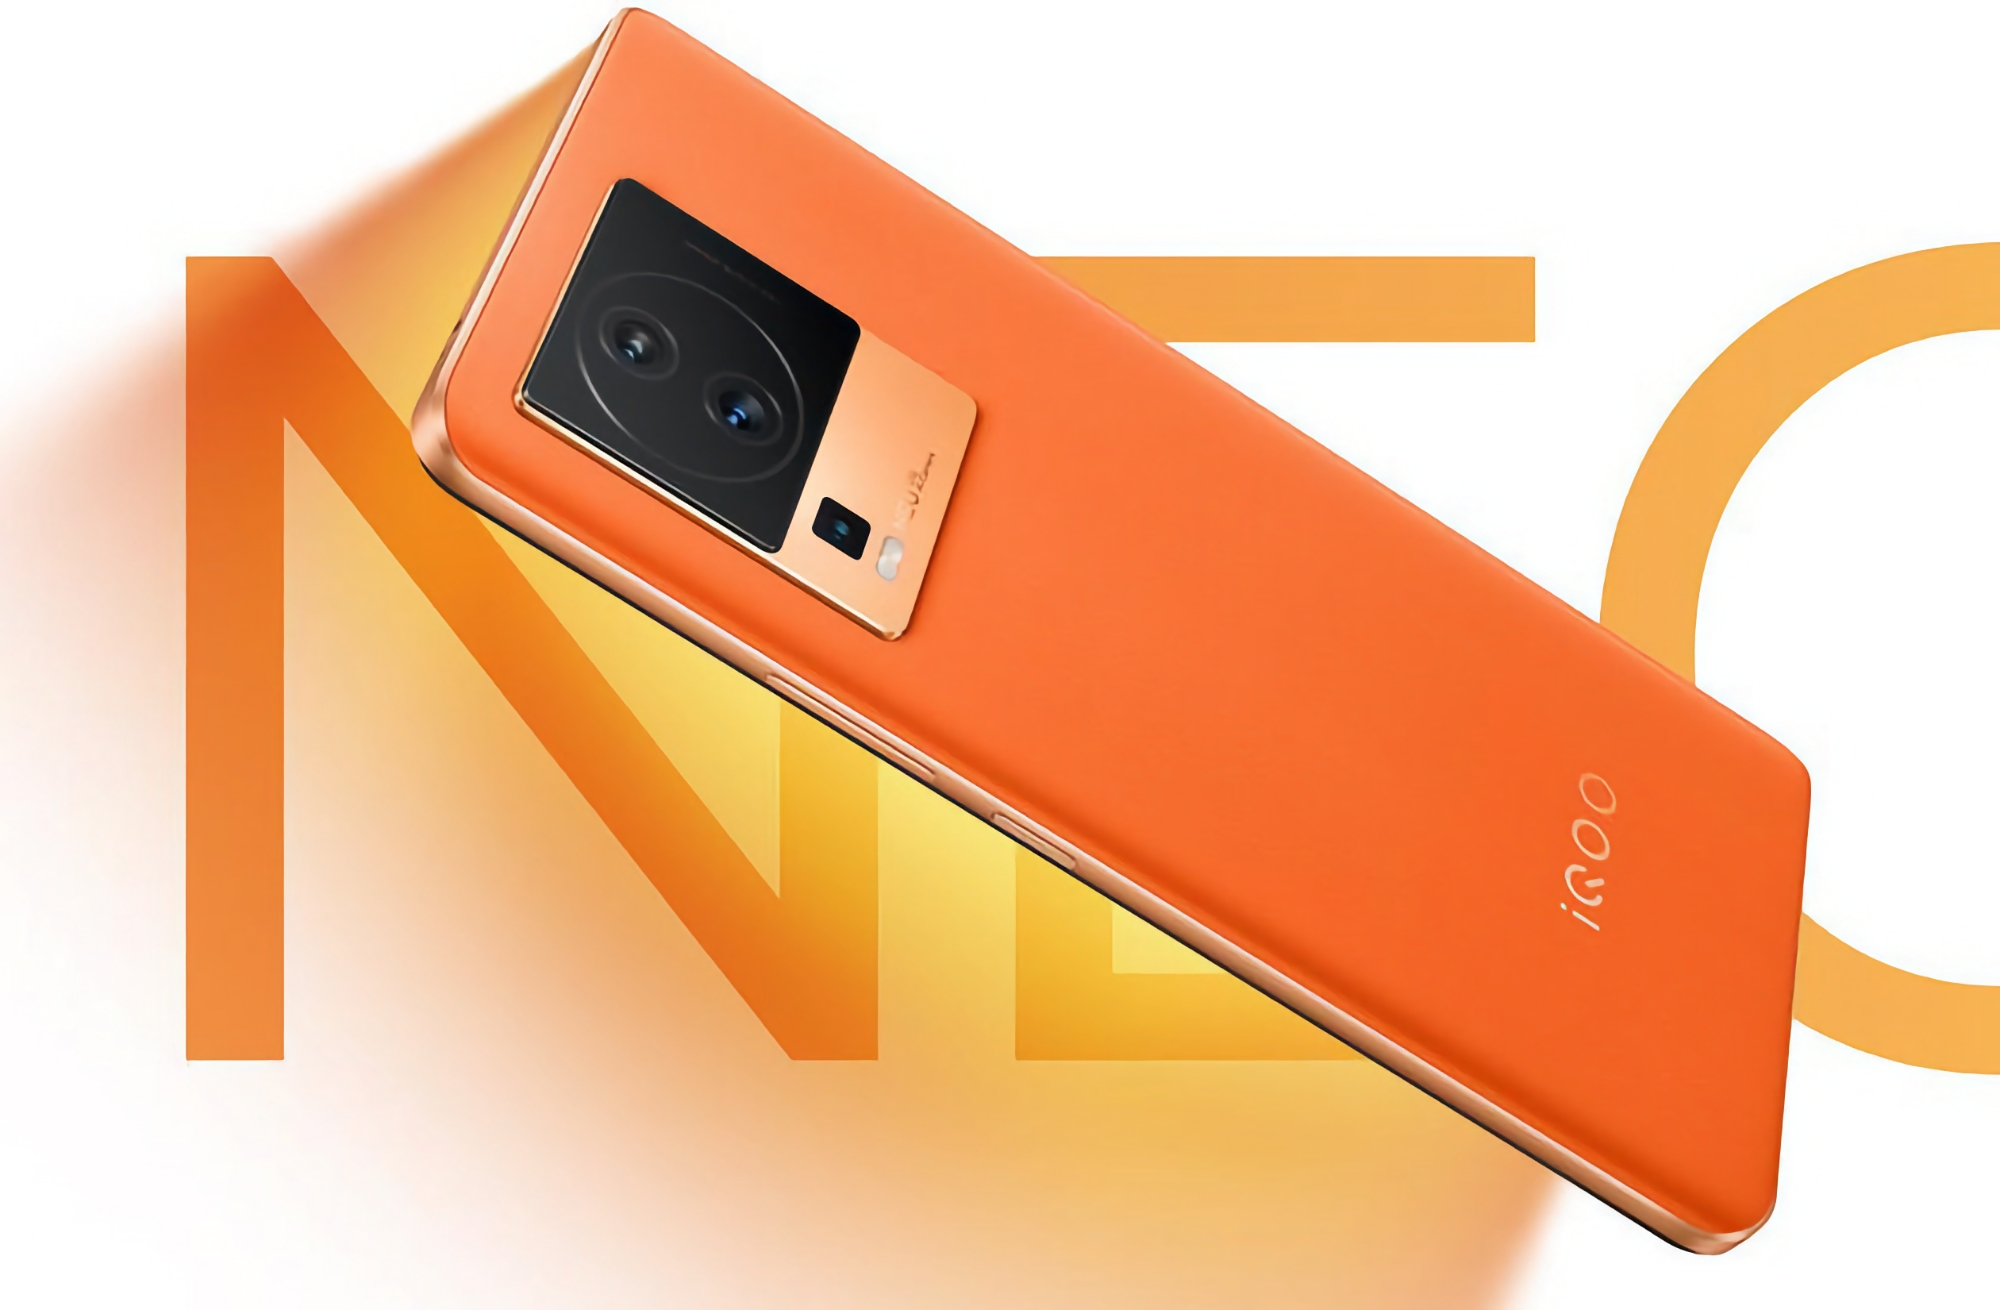 vivo lanzará el smartphone iQOO Neo 7 Pro con pantalla OLED de 120 Hz, chip Snapdragon 8+ Gen 1 y menos de 500 dólares